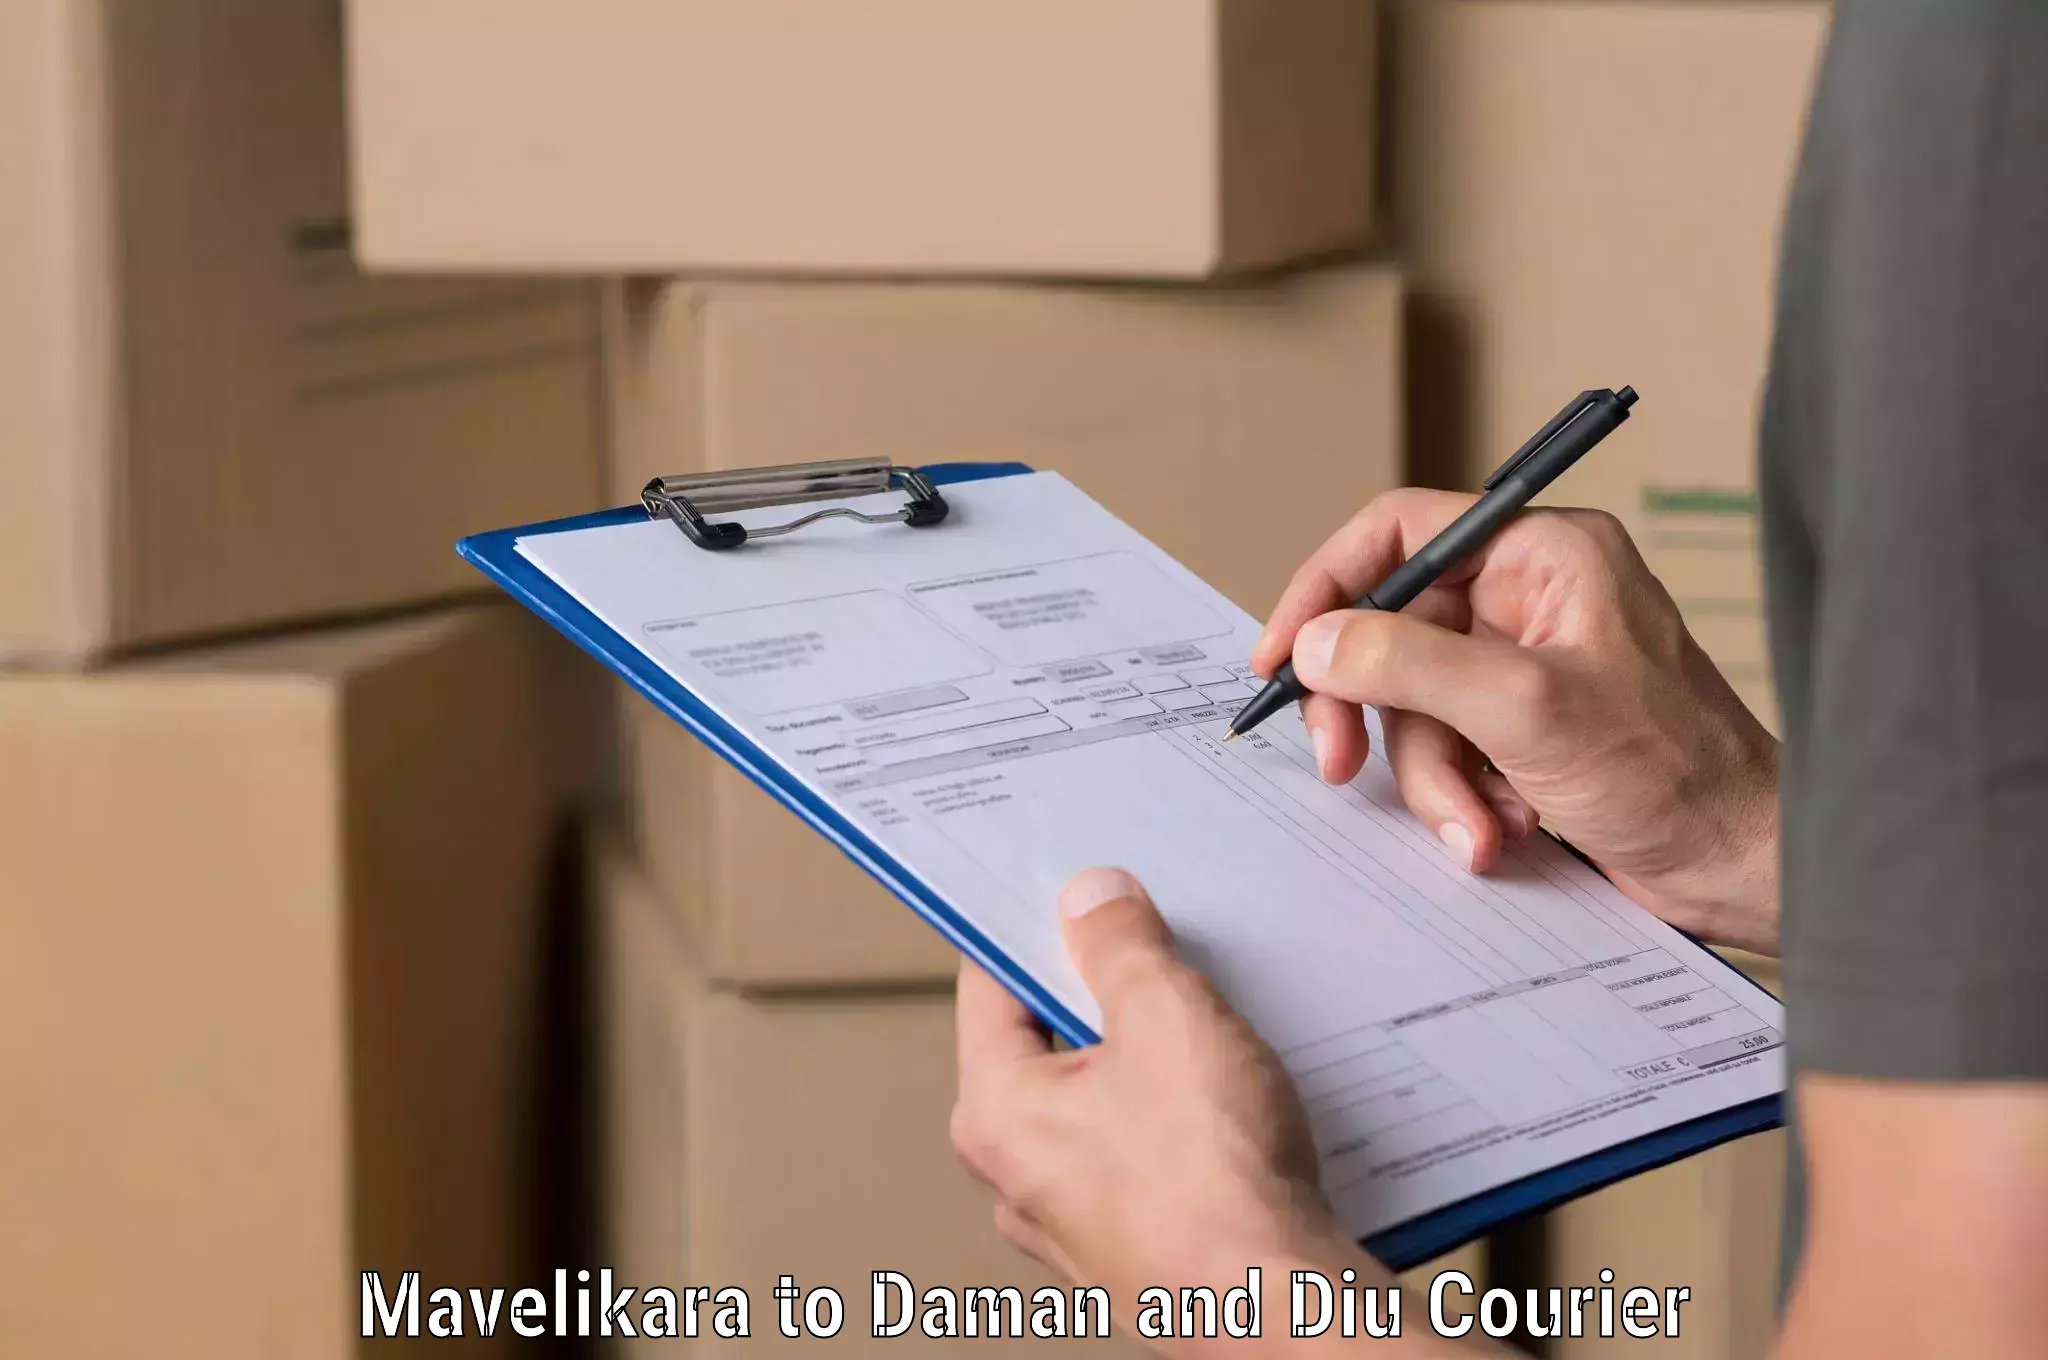 Holiday shipping services Mavelikara to Diu